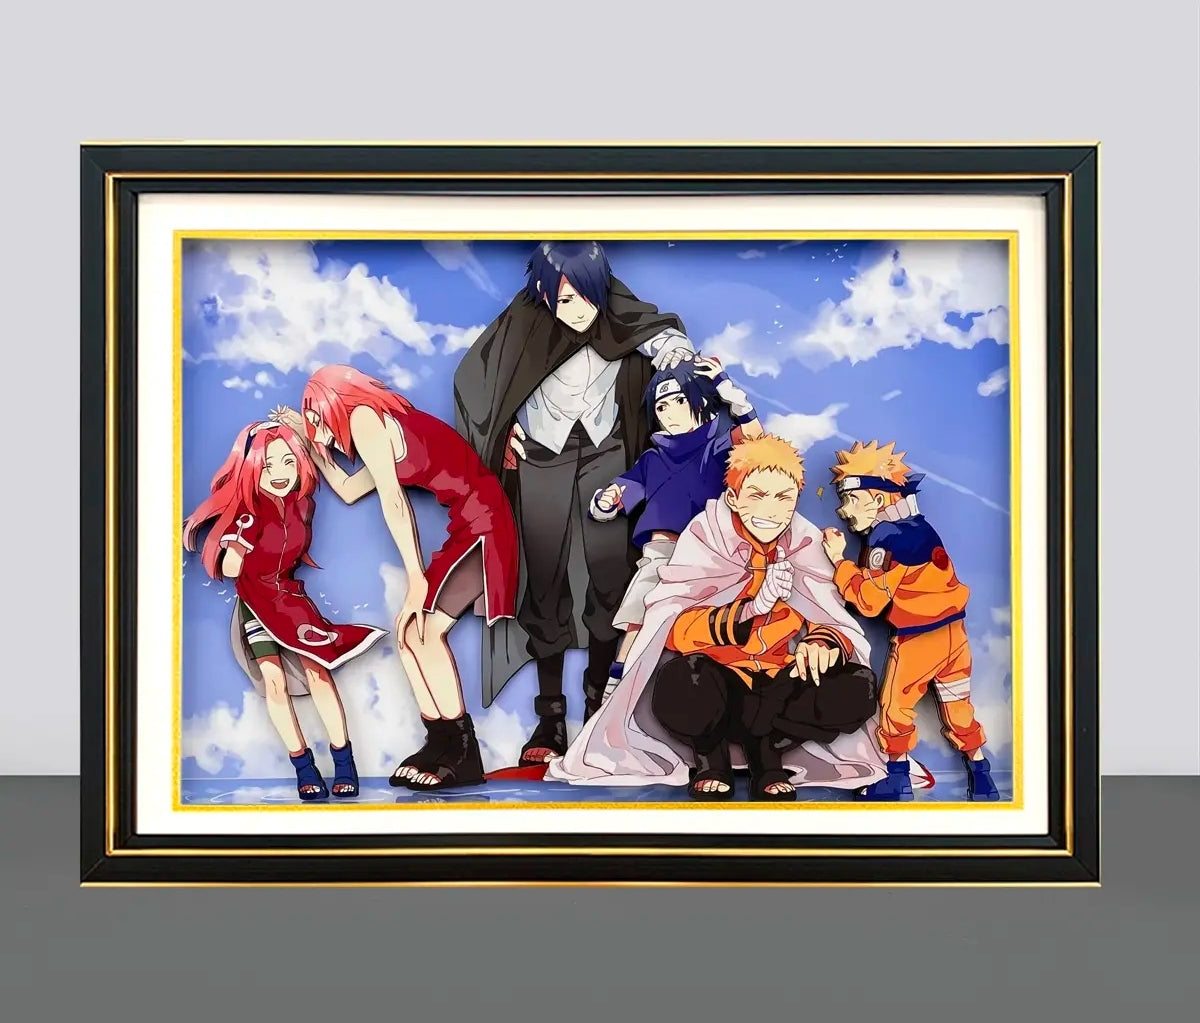 Imprimir Na Tela Japonês Anime Naruto Classe 7 Quadrinhos Pictures Room  Home Wall Stickers Decoração Presentes Clássico Kid Figuras de Ação -  AliExpress